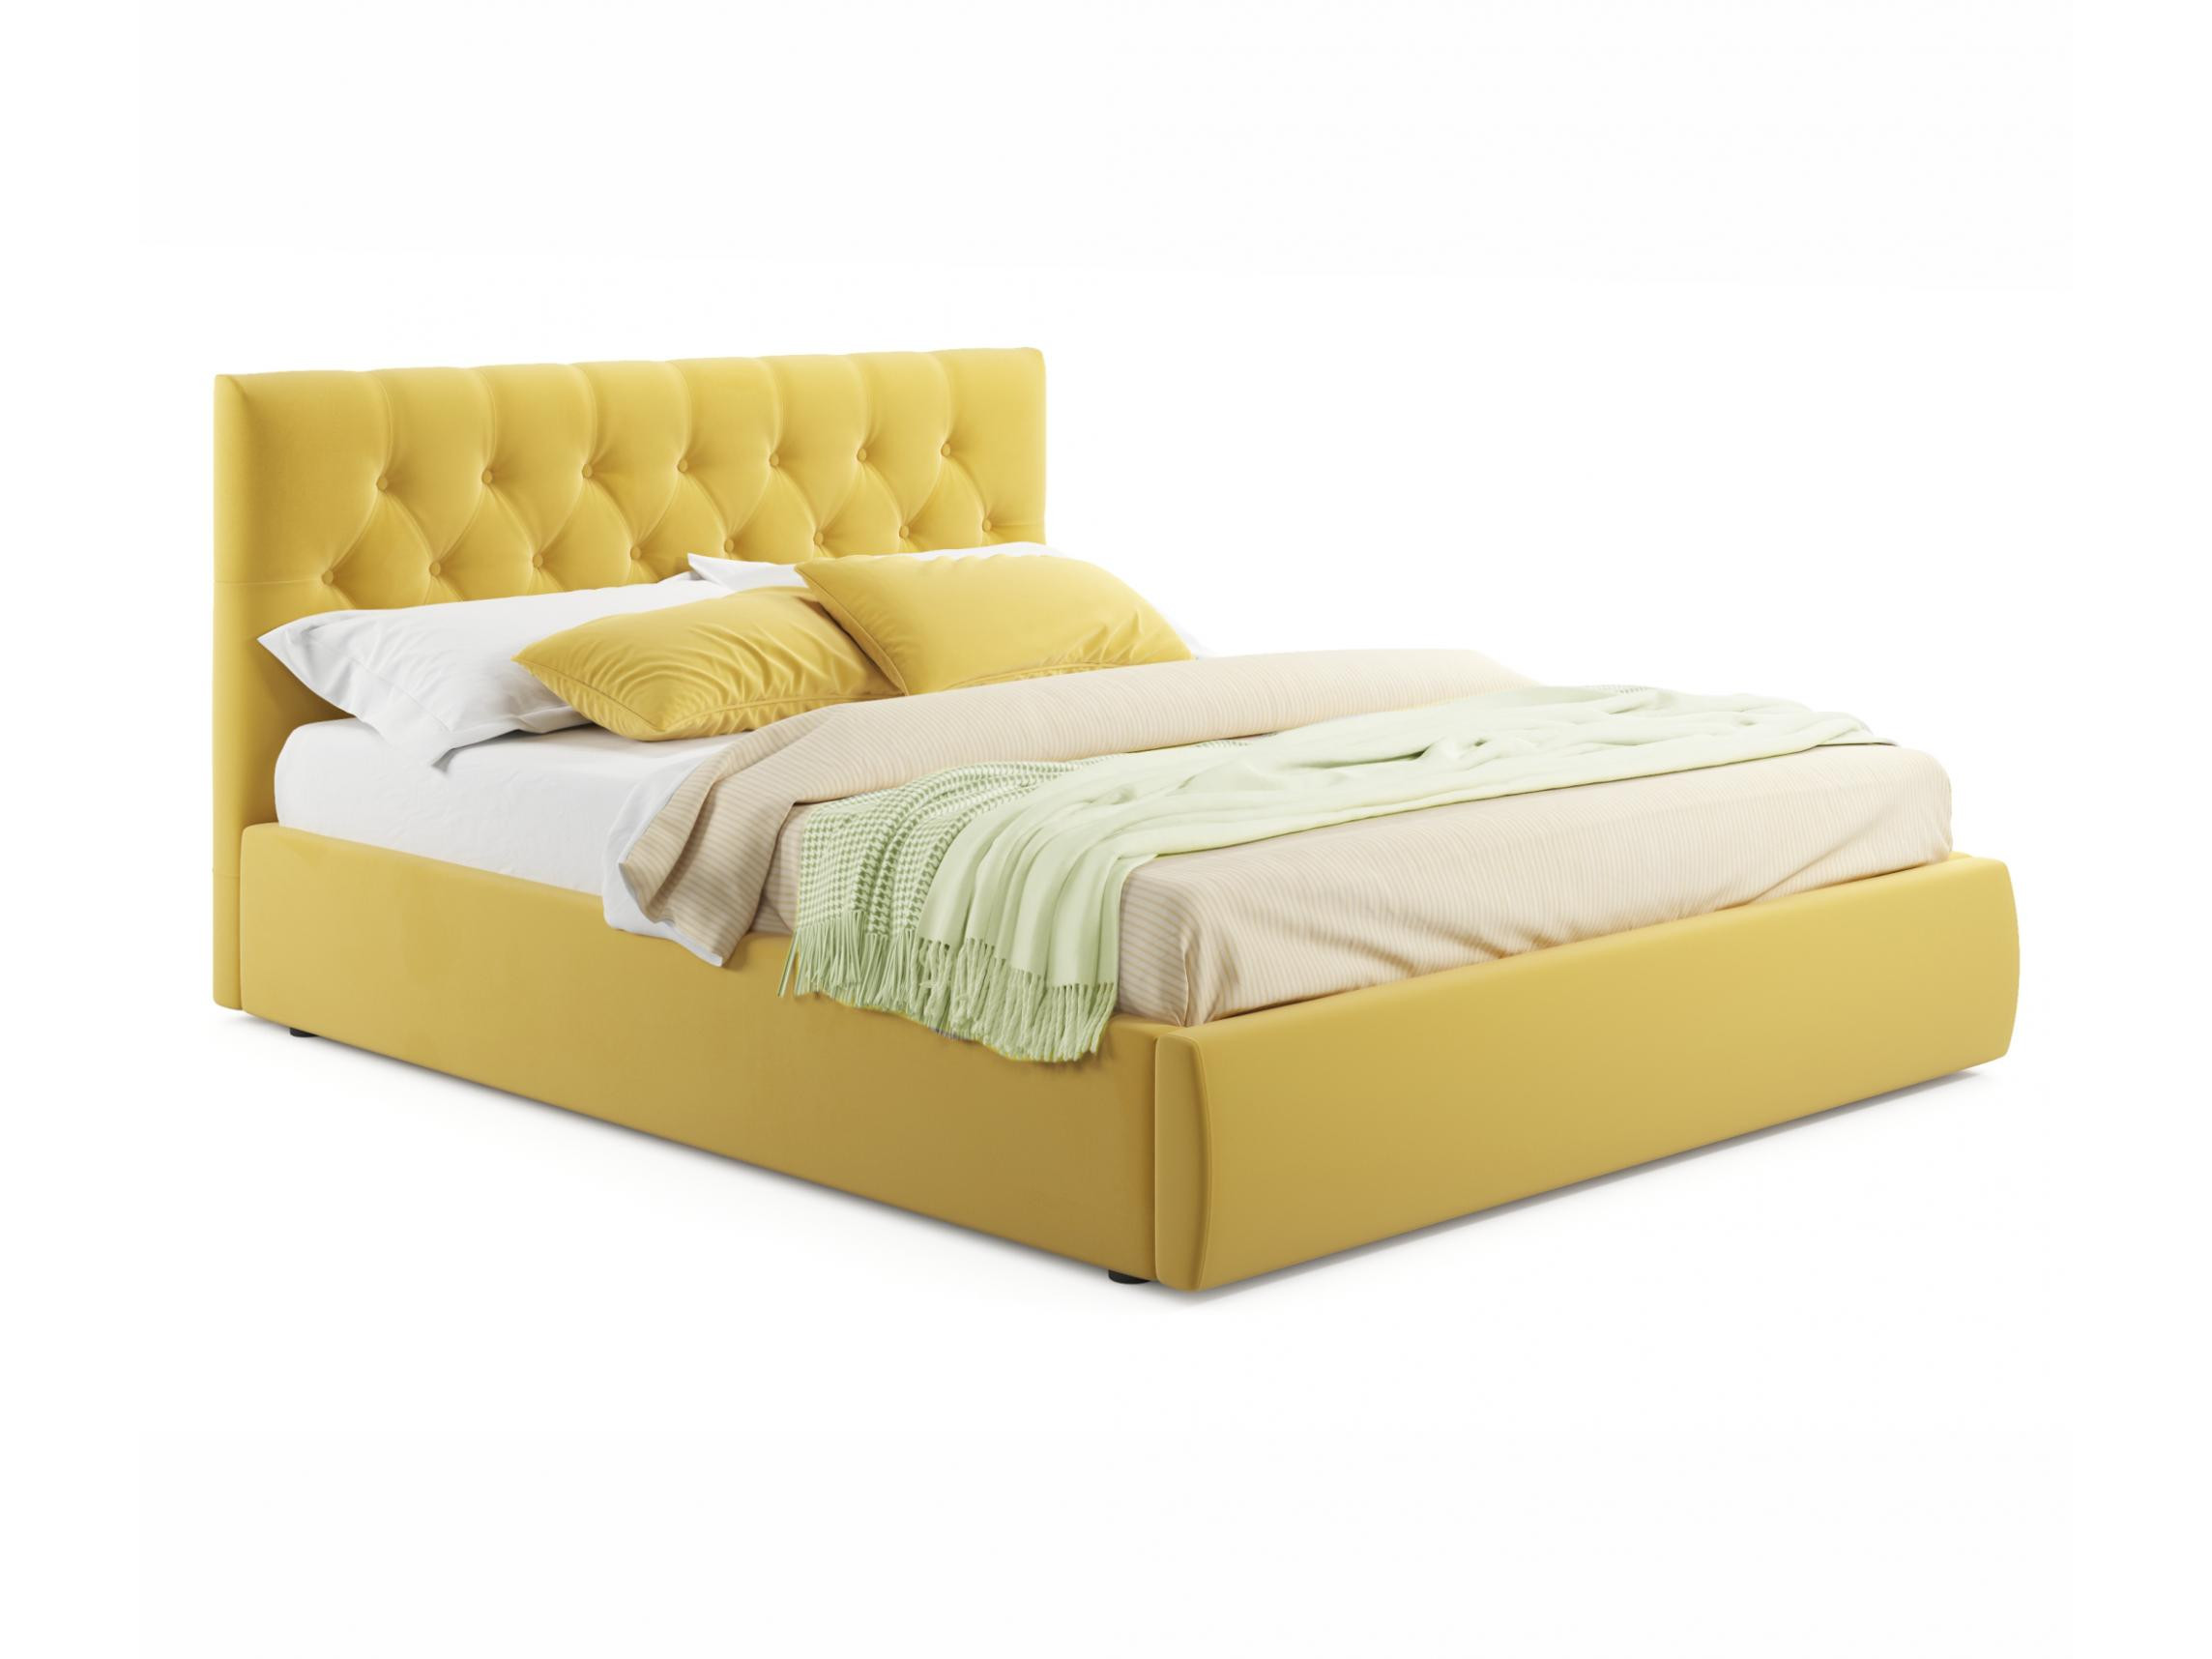 Мягкая кровать Verona 1800 желтая с подъемным механизмом желтый, Желтый, Велюр, ДСП мягкая кровать с тумбами verona 1600 желтая с подъемным механизмом желтый желтый велюр дсп